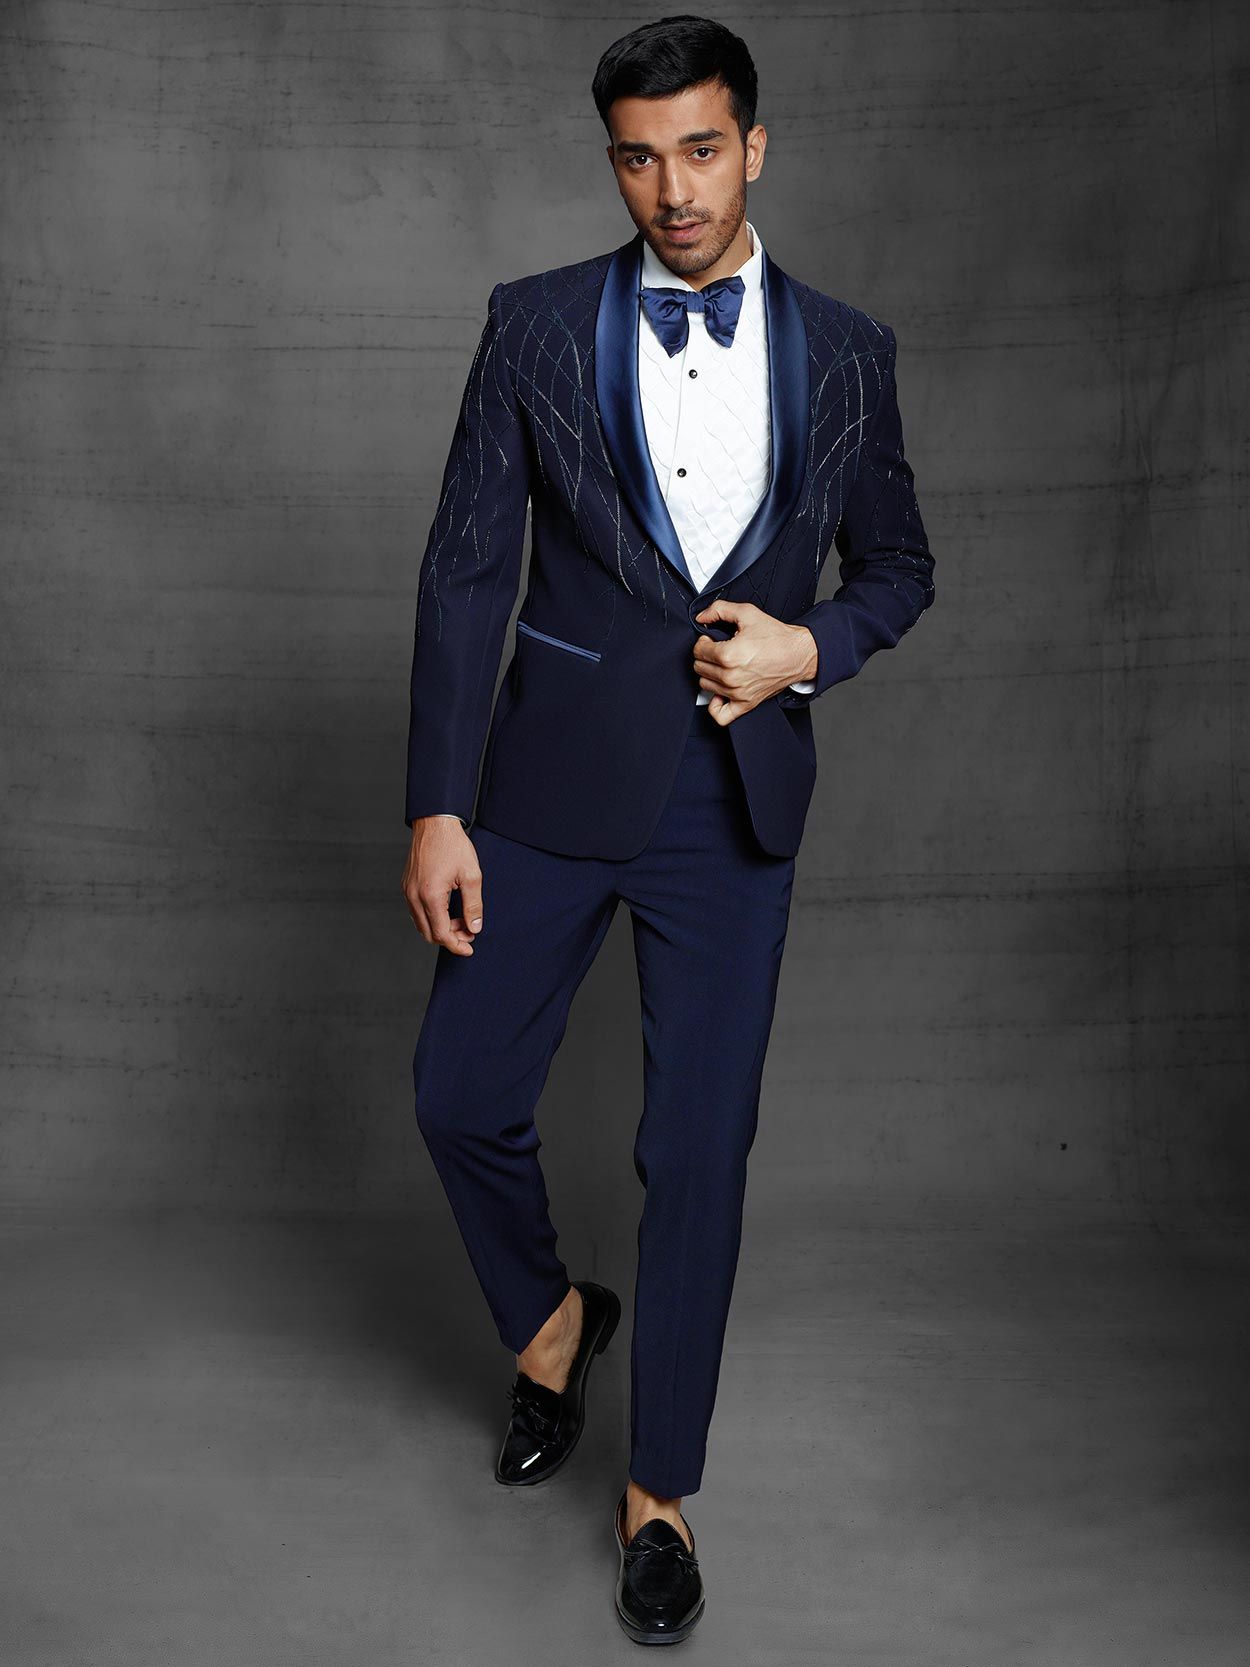 Navy Blue 3 Piece Groom Wedding Suit for Men | GentWith.com